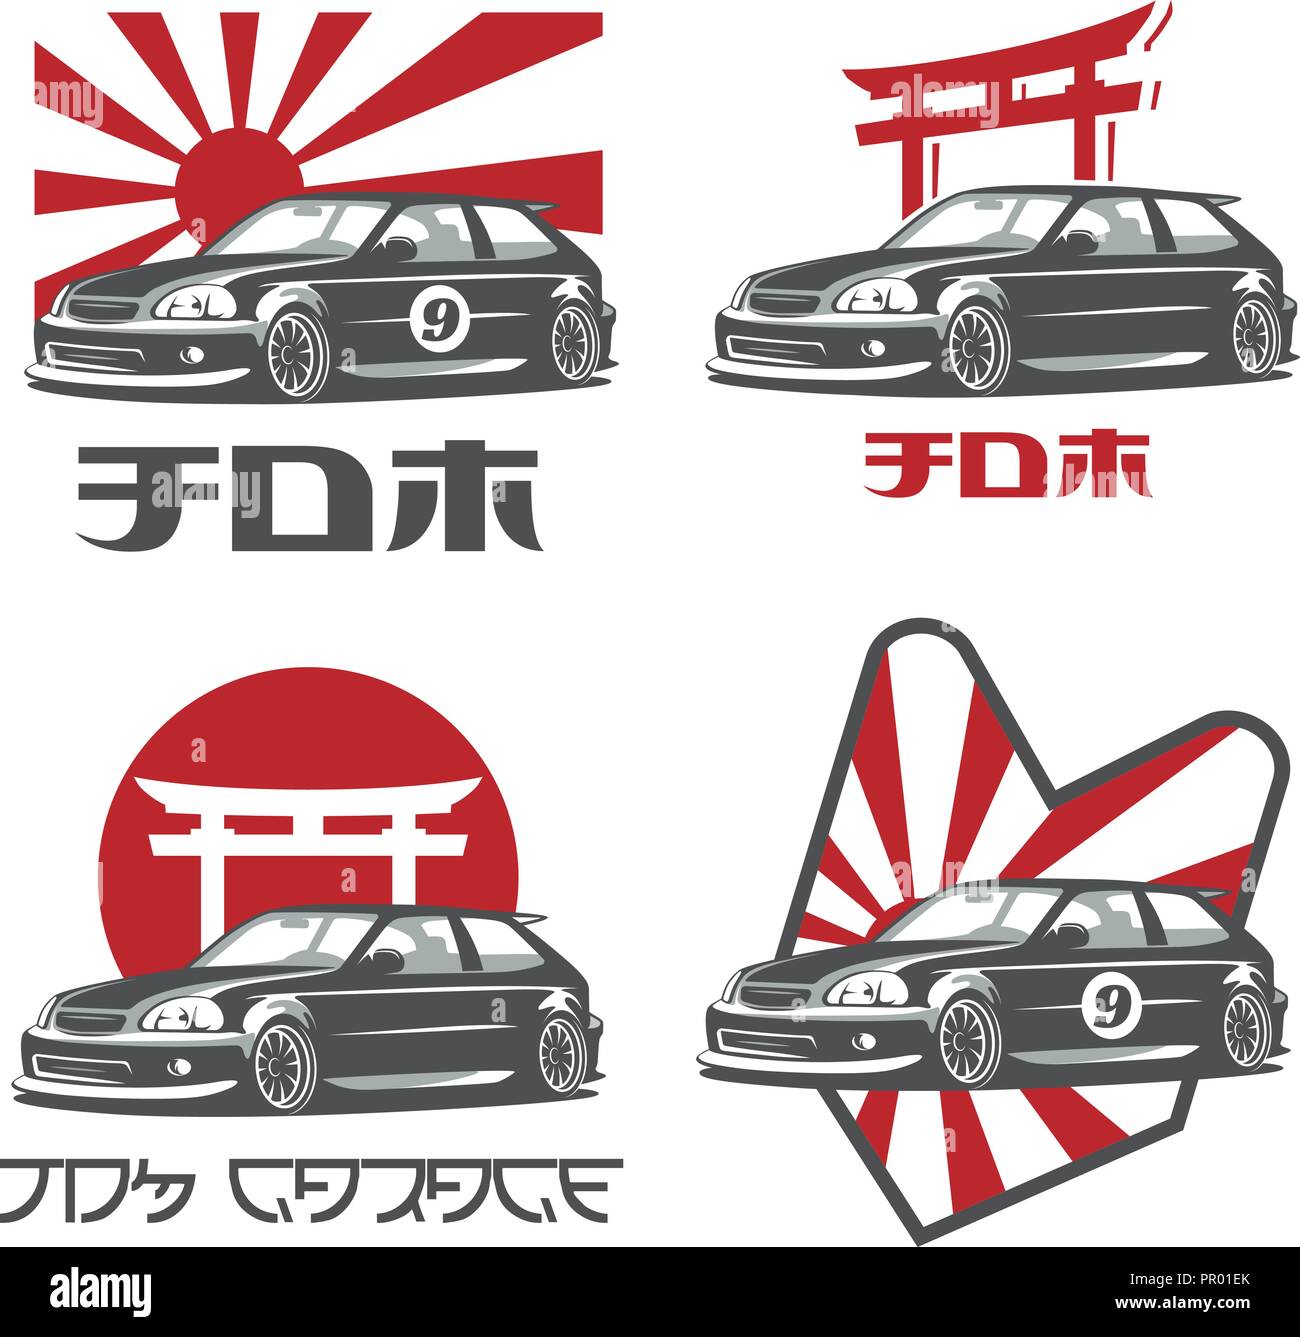 Classic 90 s japanisches Auto Logos, Embleme und Schriftzüge auf weißem Hintergrund. "JDM" und "JDM Garage" Text auf dem Bild. Stock Vektor